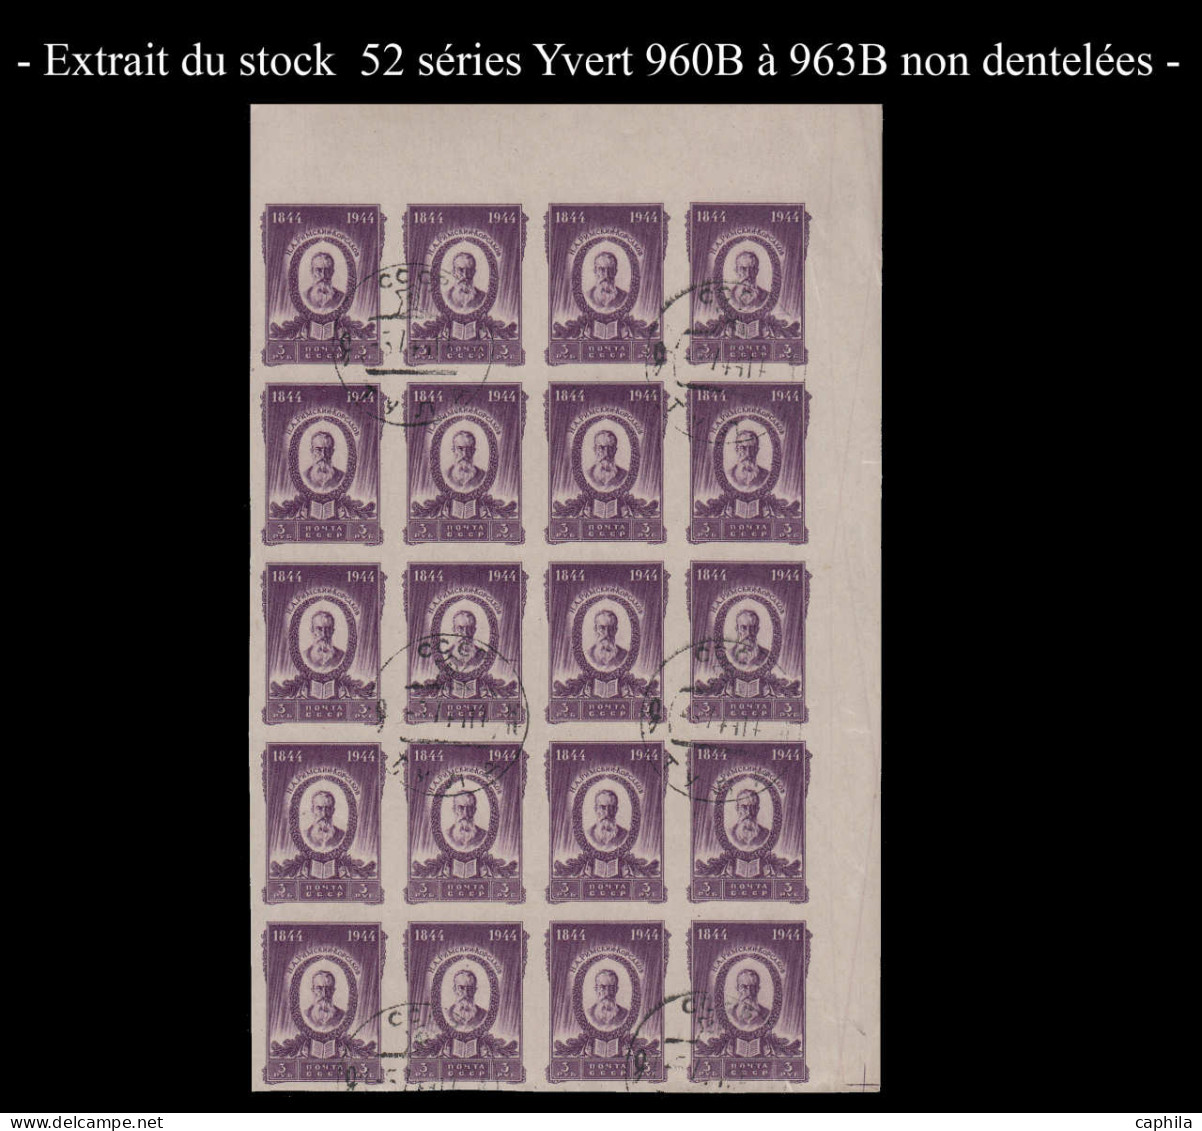 O RUSSIE - Lots & Collections - Stock de non dentelés en feuilles ou fragments entre les numéros 938B et 3105